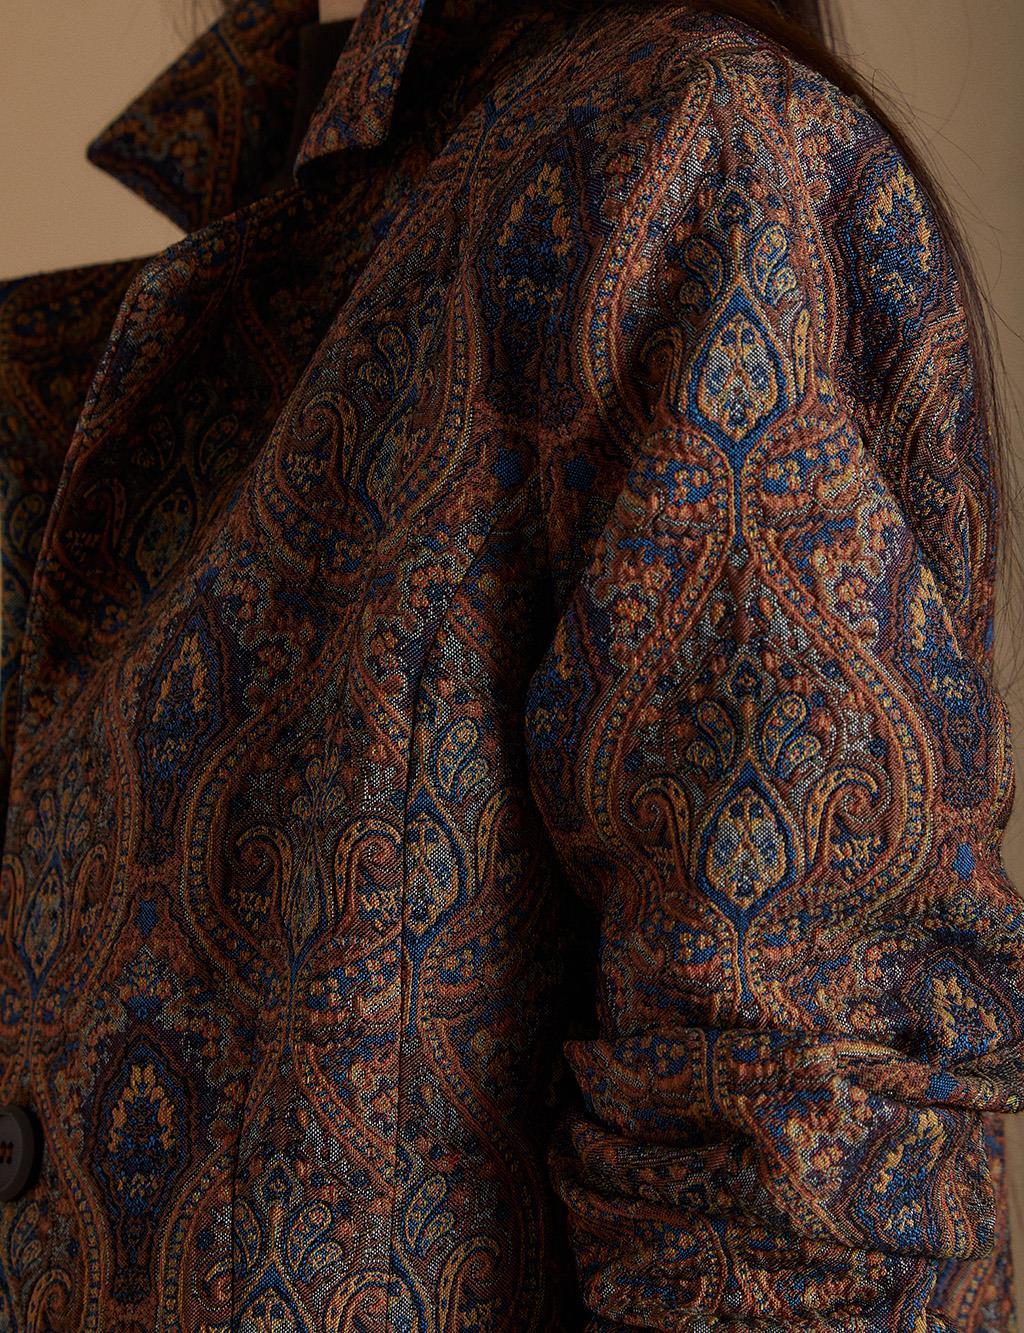 Ethnic Patterned Blazer Jacket Indigo-Camel KA-A22-13098-39-06